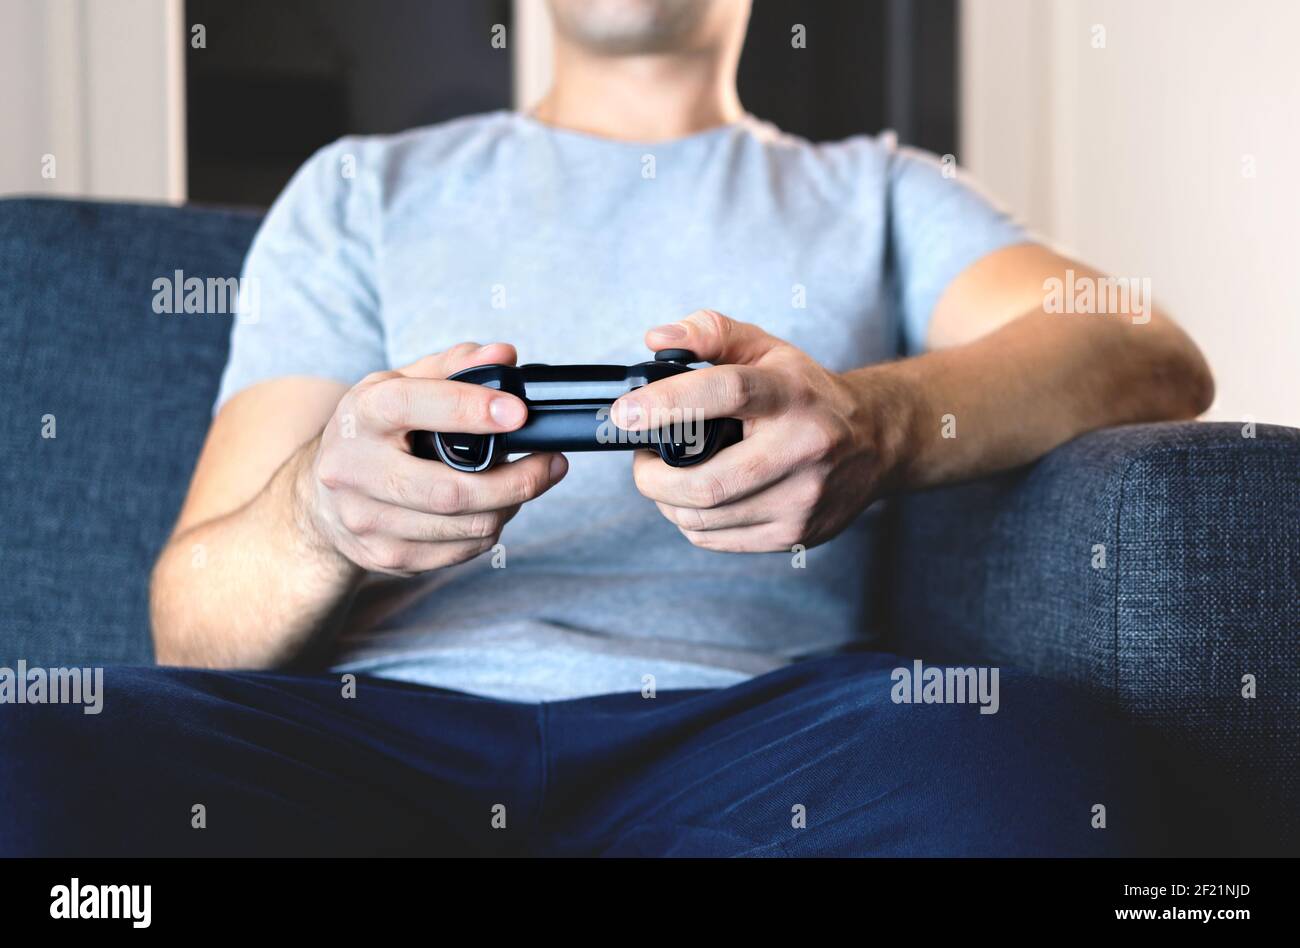 Manette de jeu vidéo à portée de main pour jouer sur console. Gamer Guy jouant à la télévision jeu vidéo avec manette de commande ou joystick tout en étant assis à la maison canapé. Banque D'Images